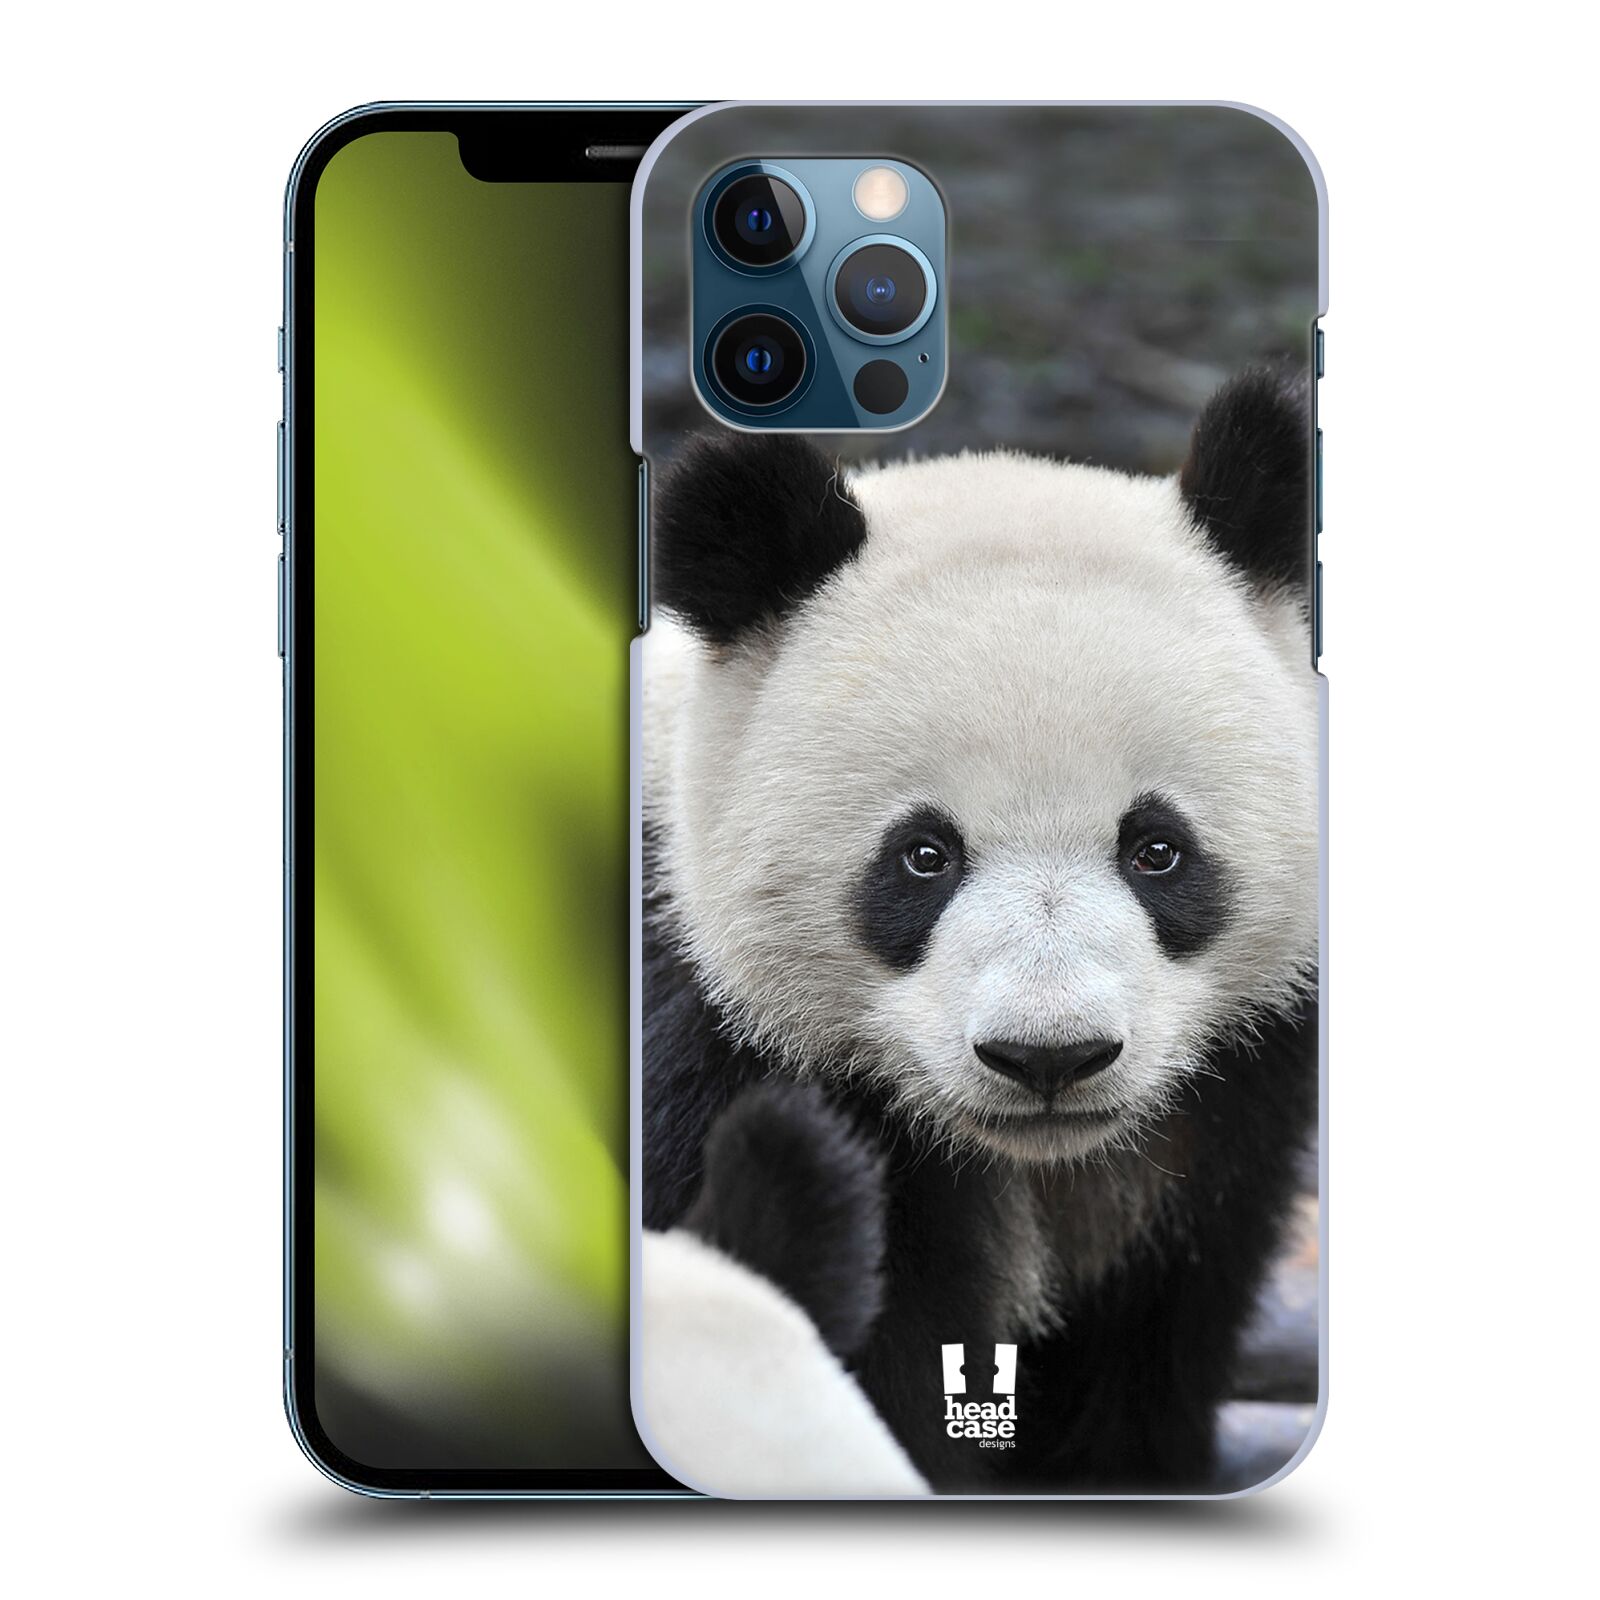 HEAD CASE plastový obal na mobil Apple Iphone 12 / Iphone 12 PRO vzor Divočina, Divoký život a zvířata foto MEDVĚD PANDA